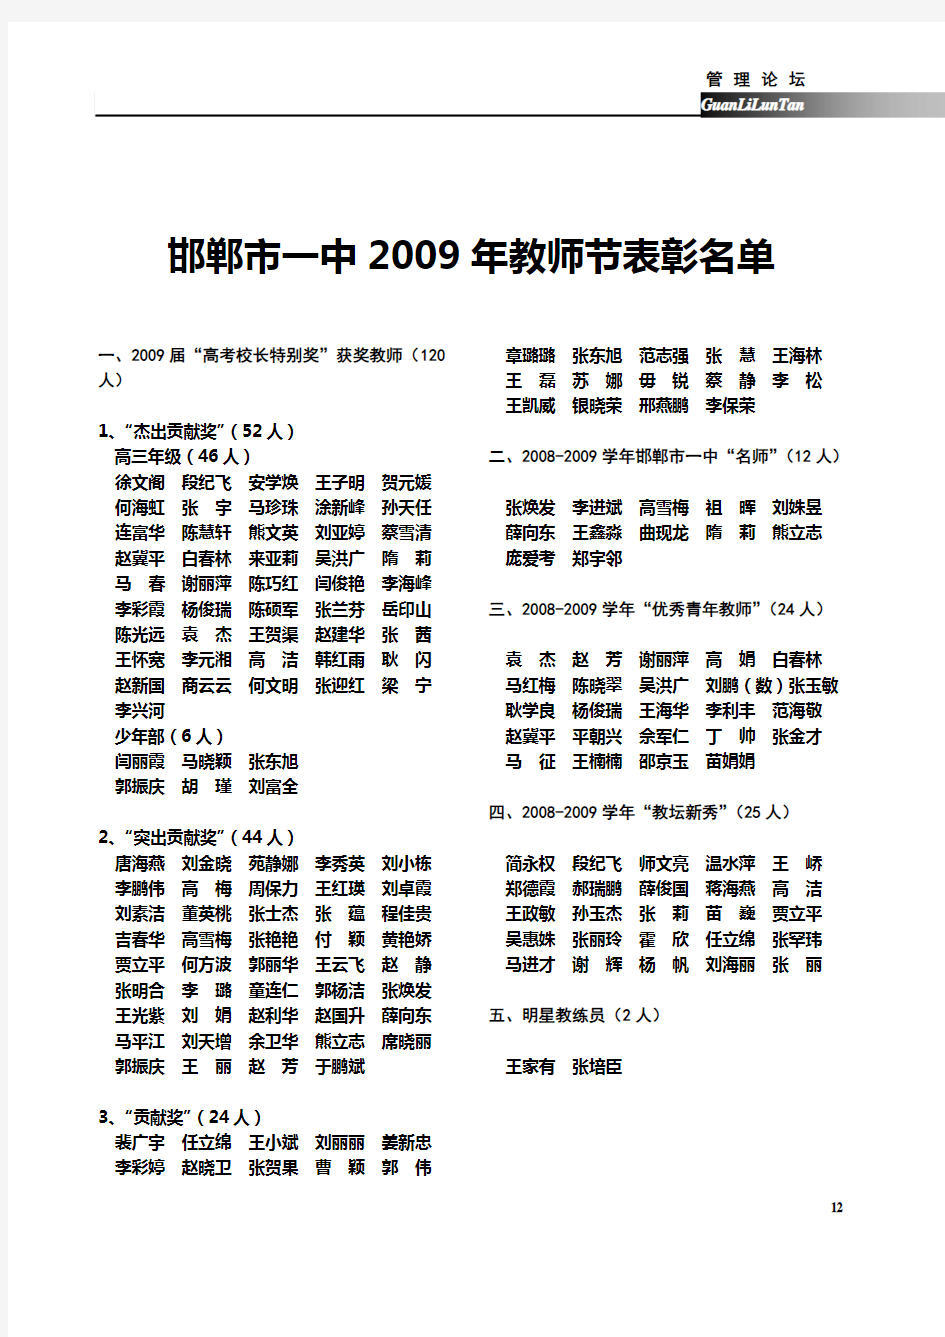 邯郸市一中2009年教师节表彰名单